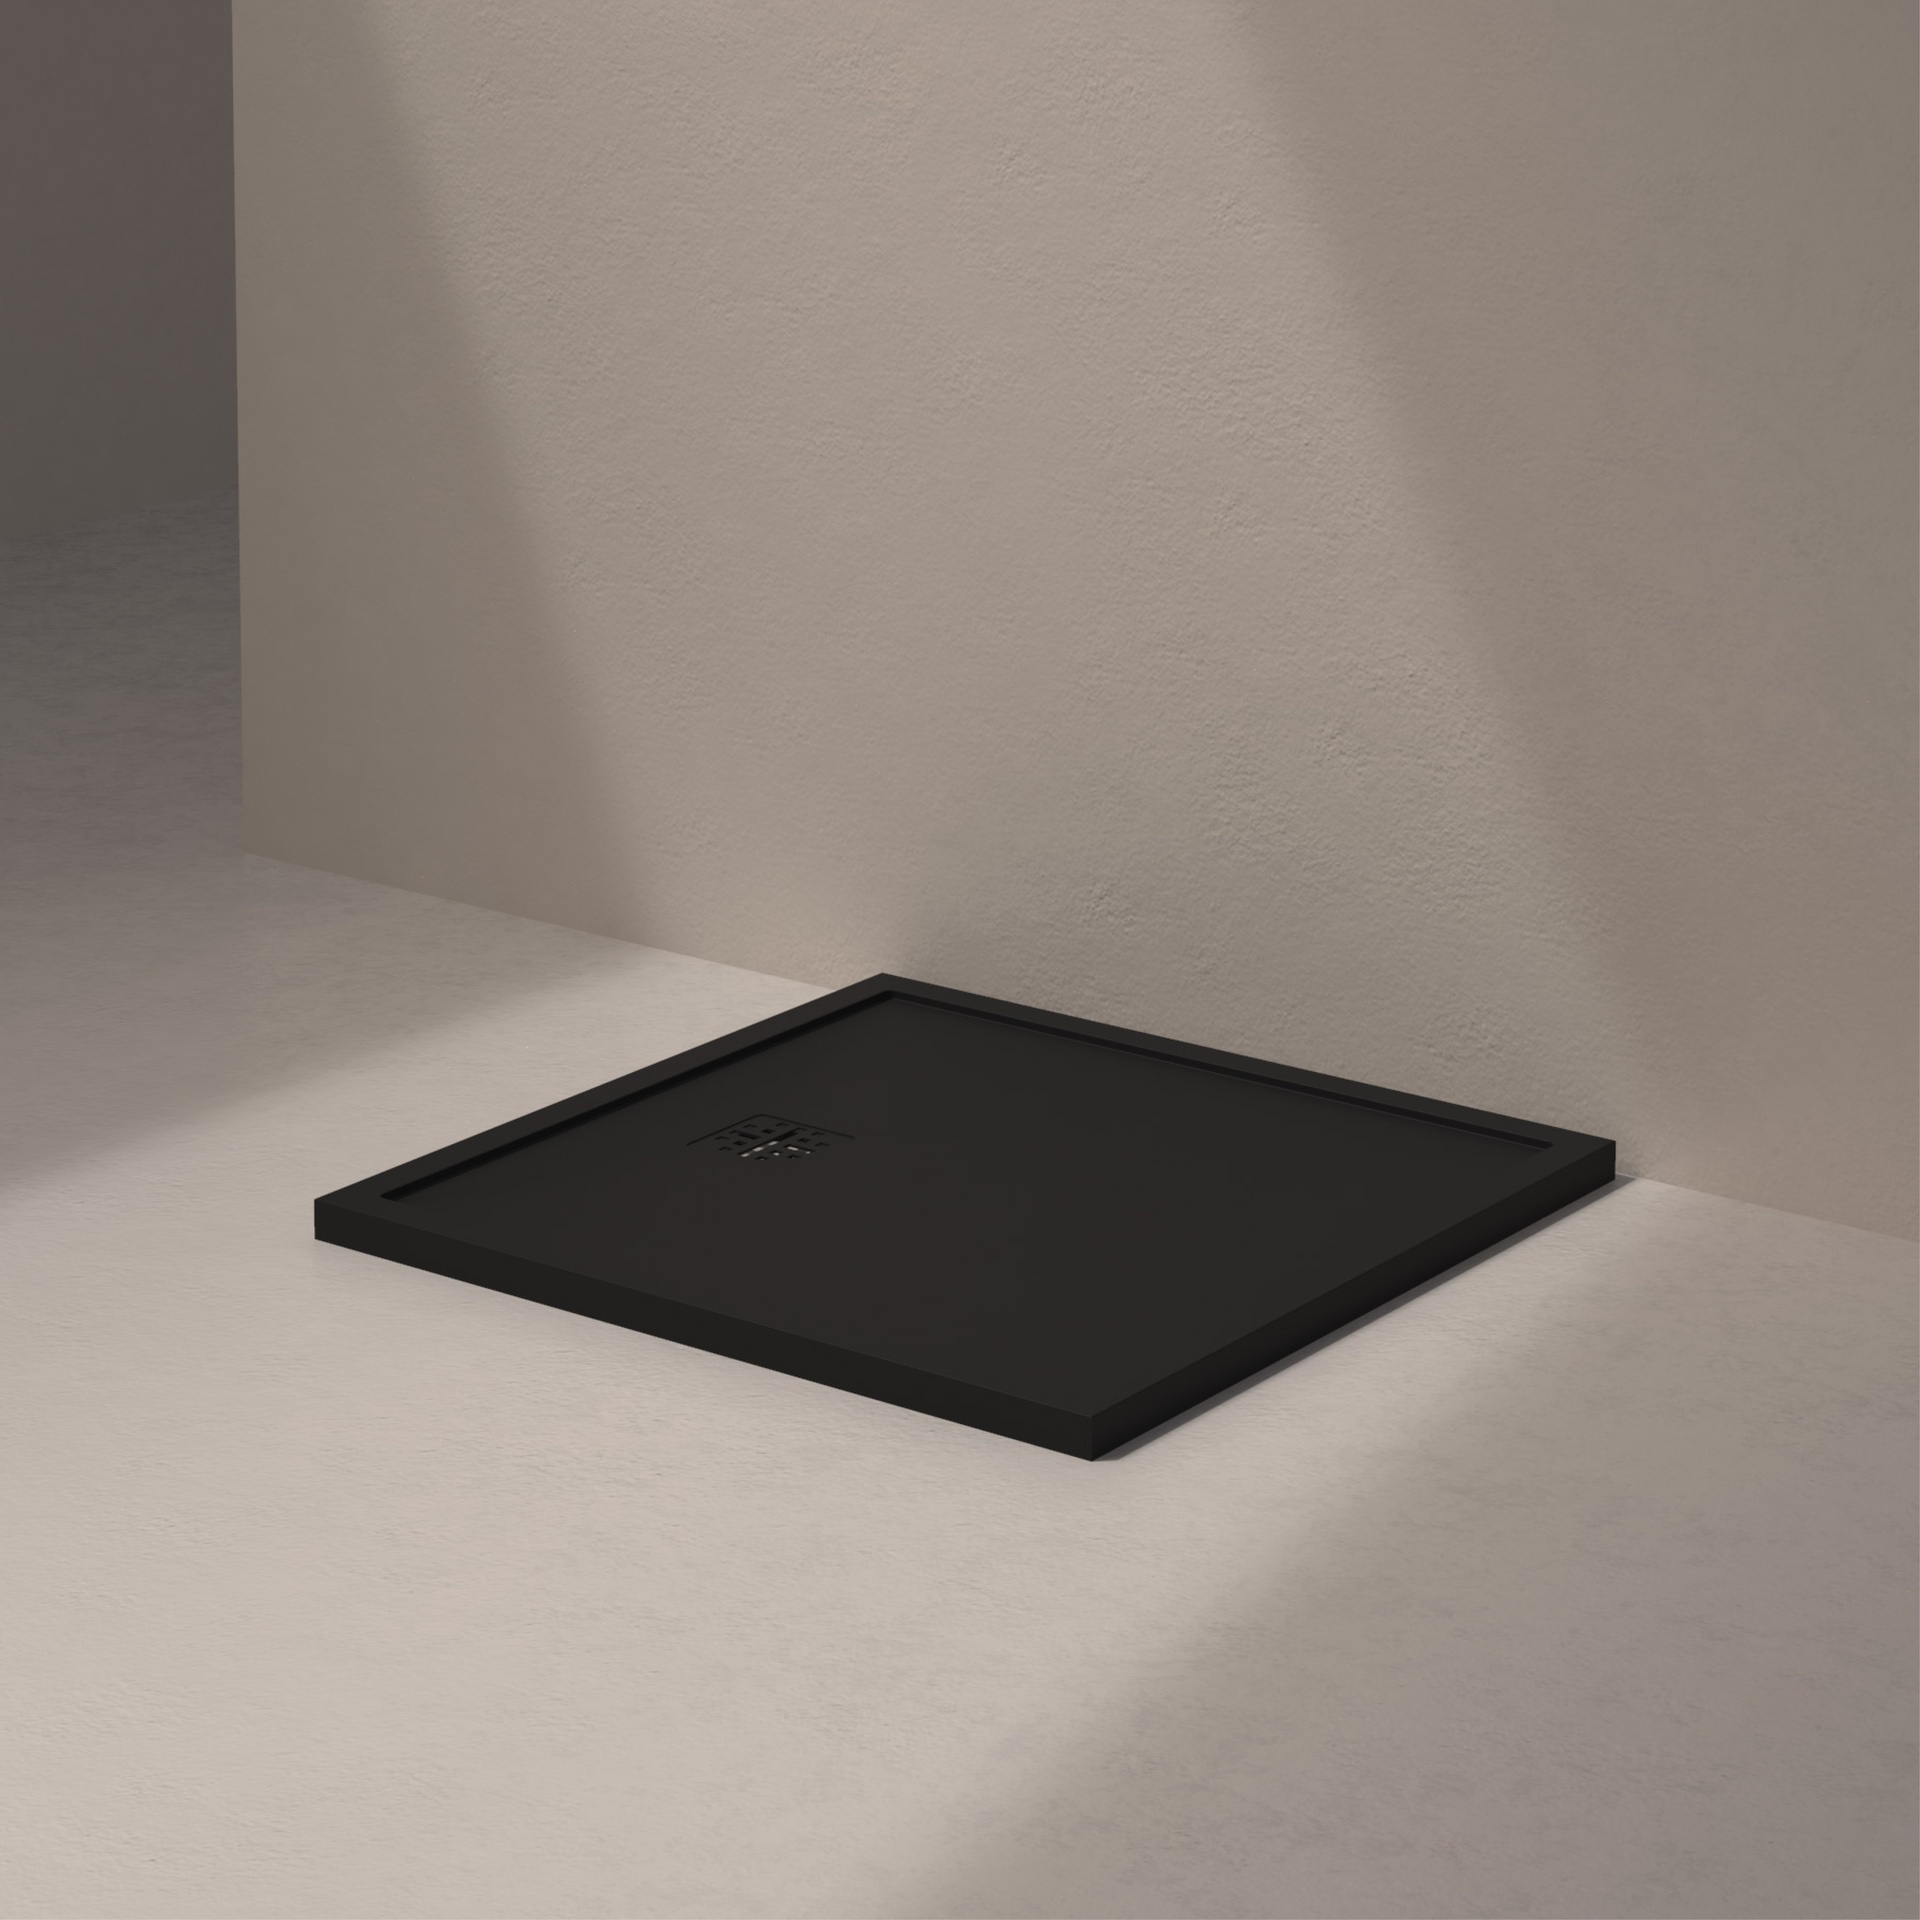 [MSTES9090-BLACK] Mist douche vloer, korte zijde afvoer (90x90, natuursteen zwart)